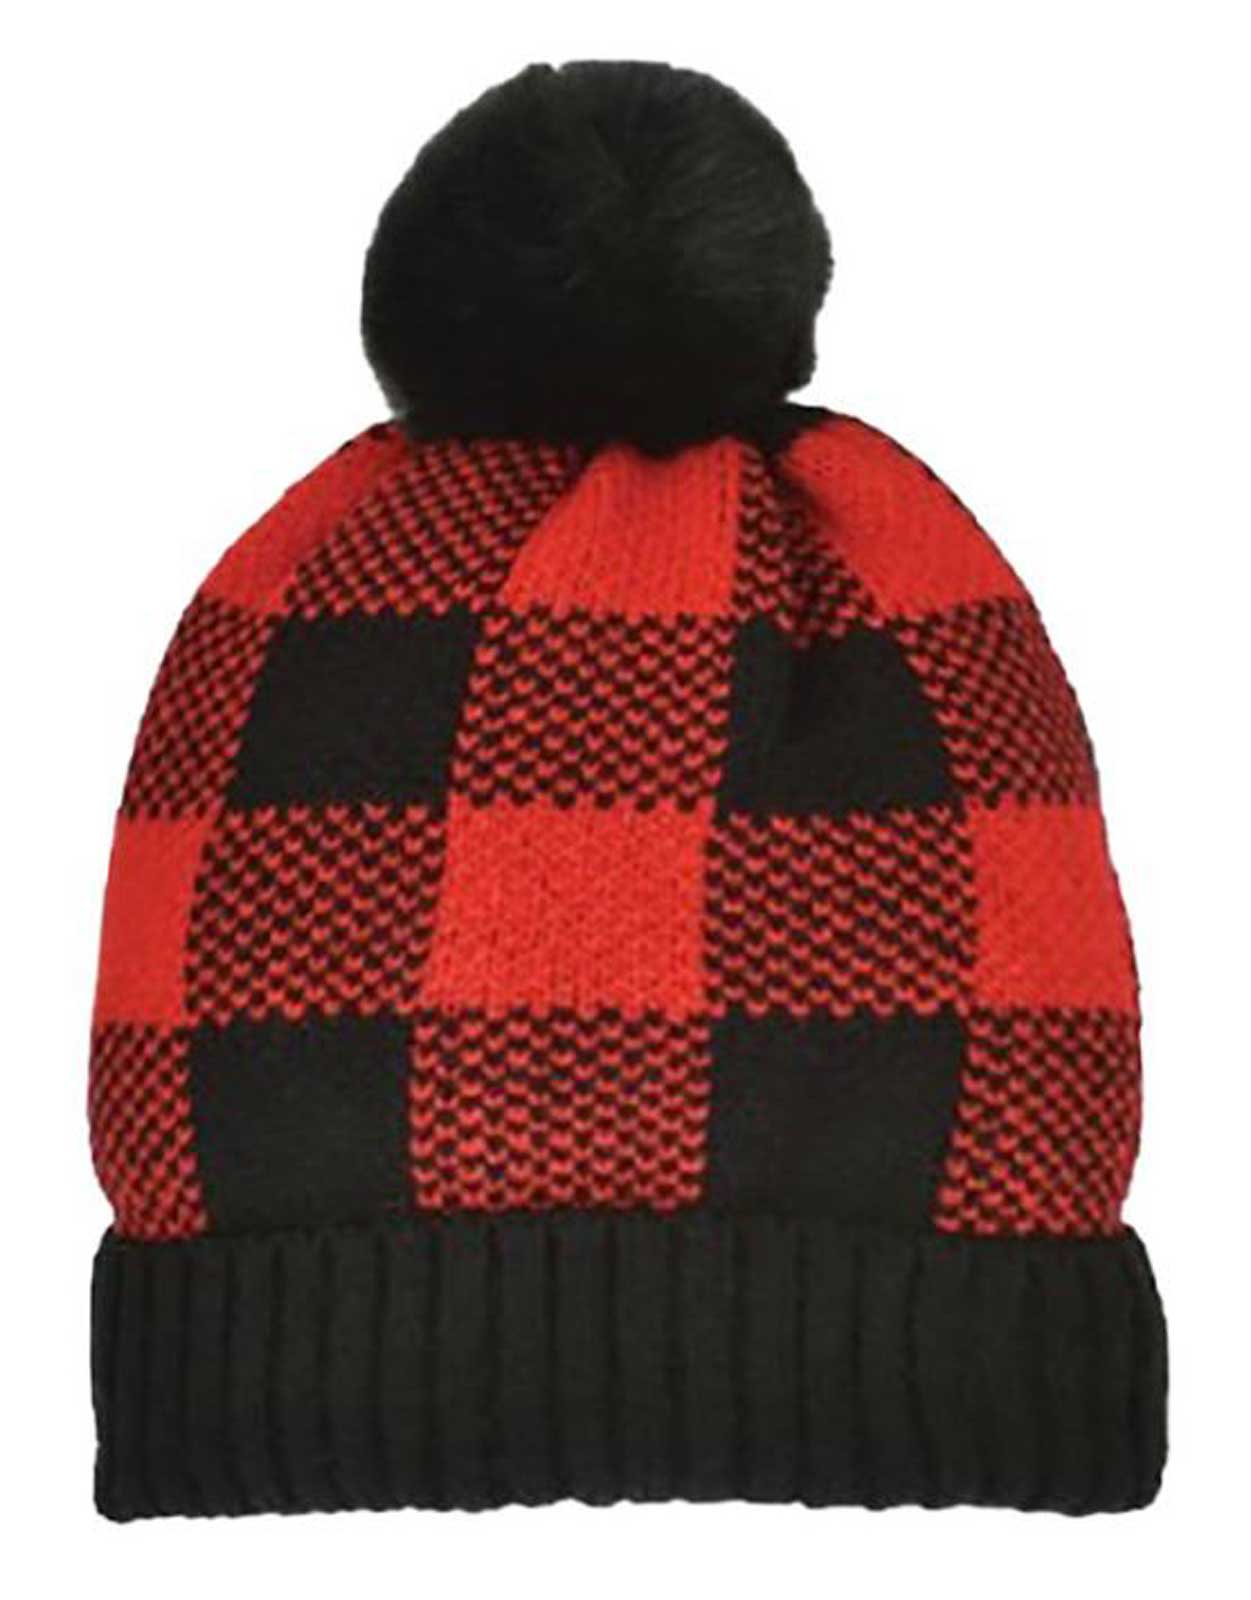 Buffalo Outdoors®  Women's Knit Pom Hat-Black